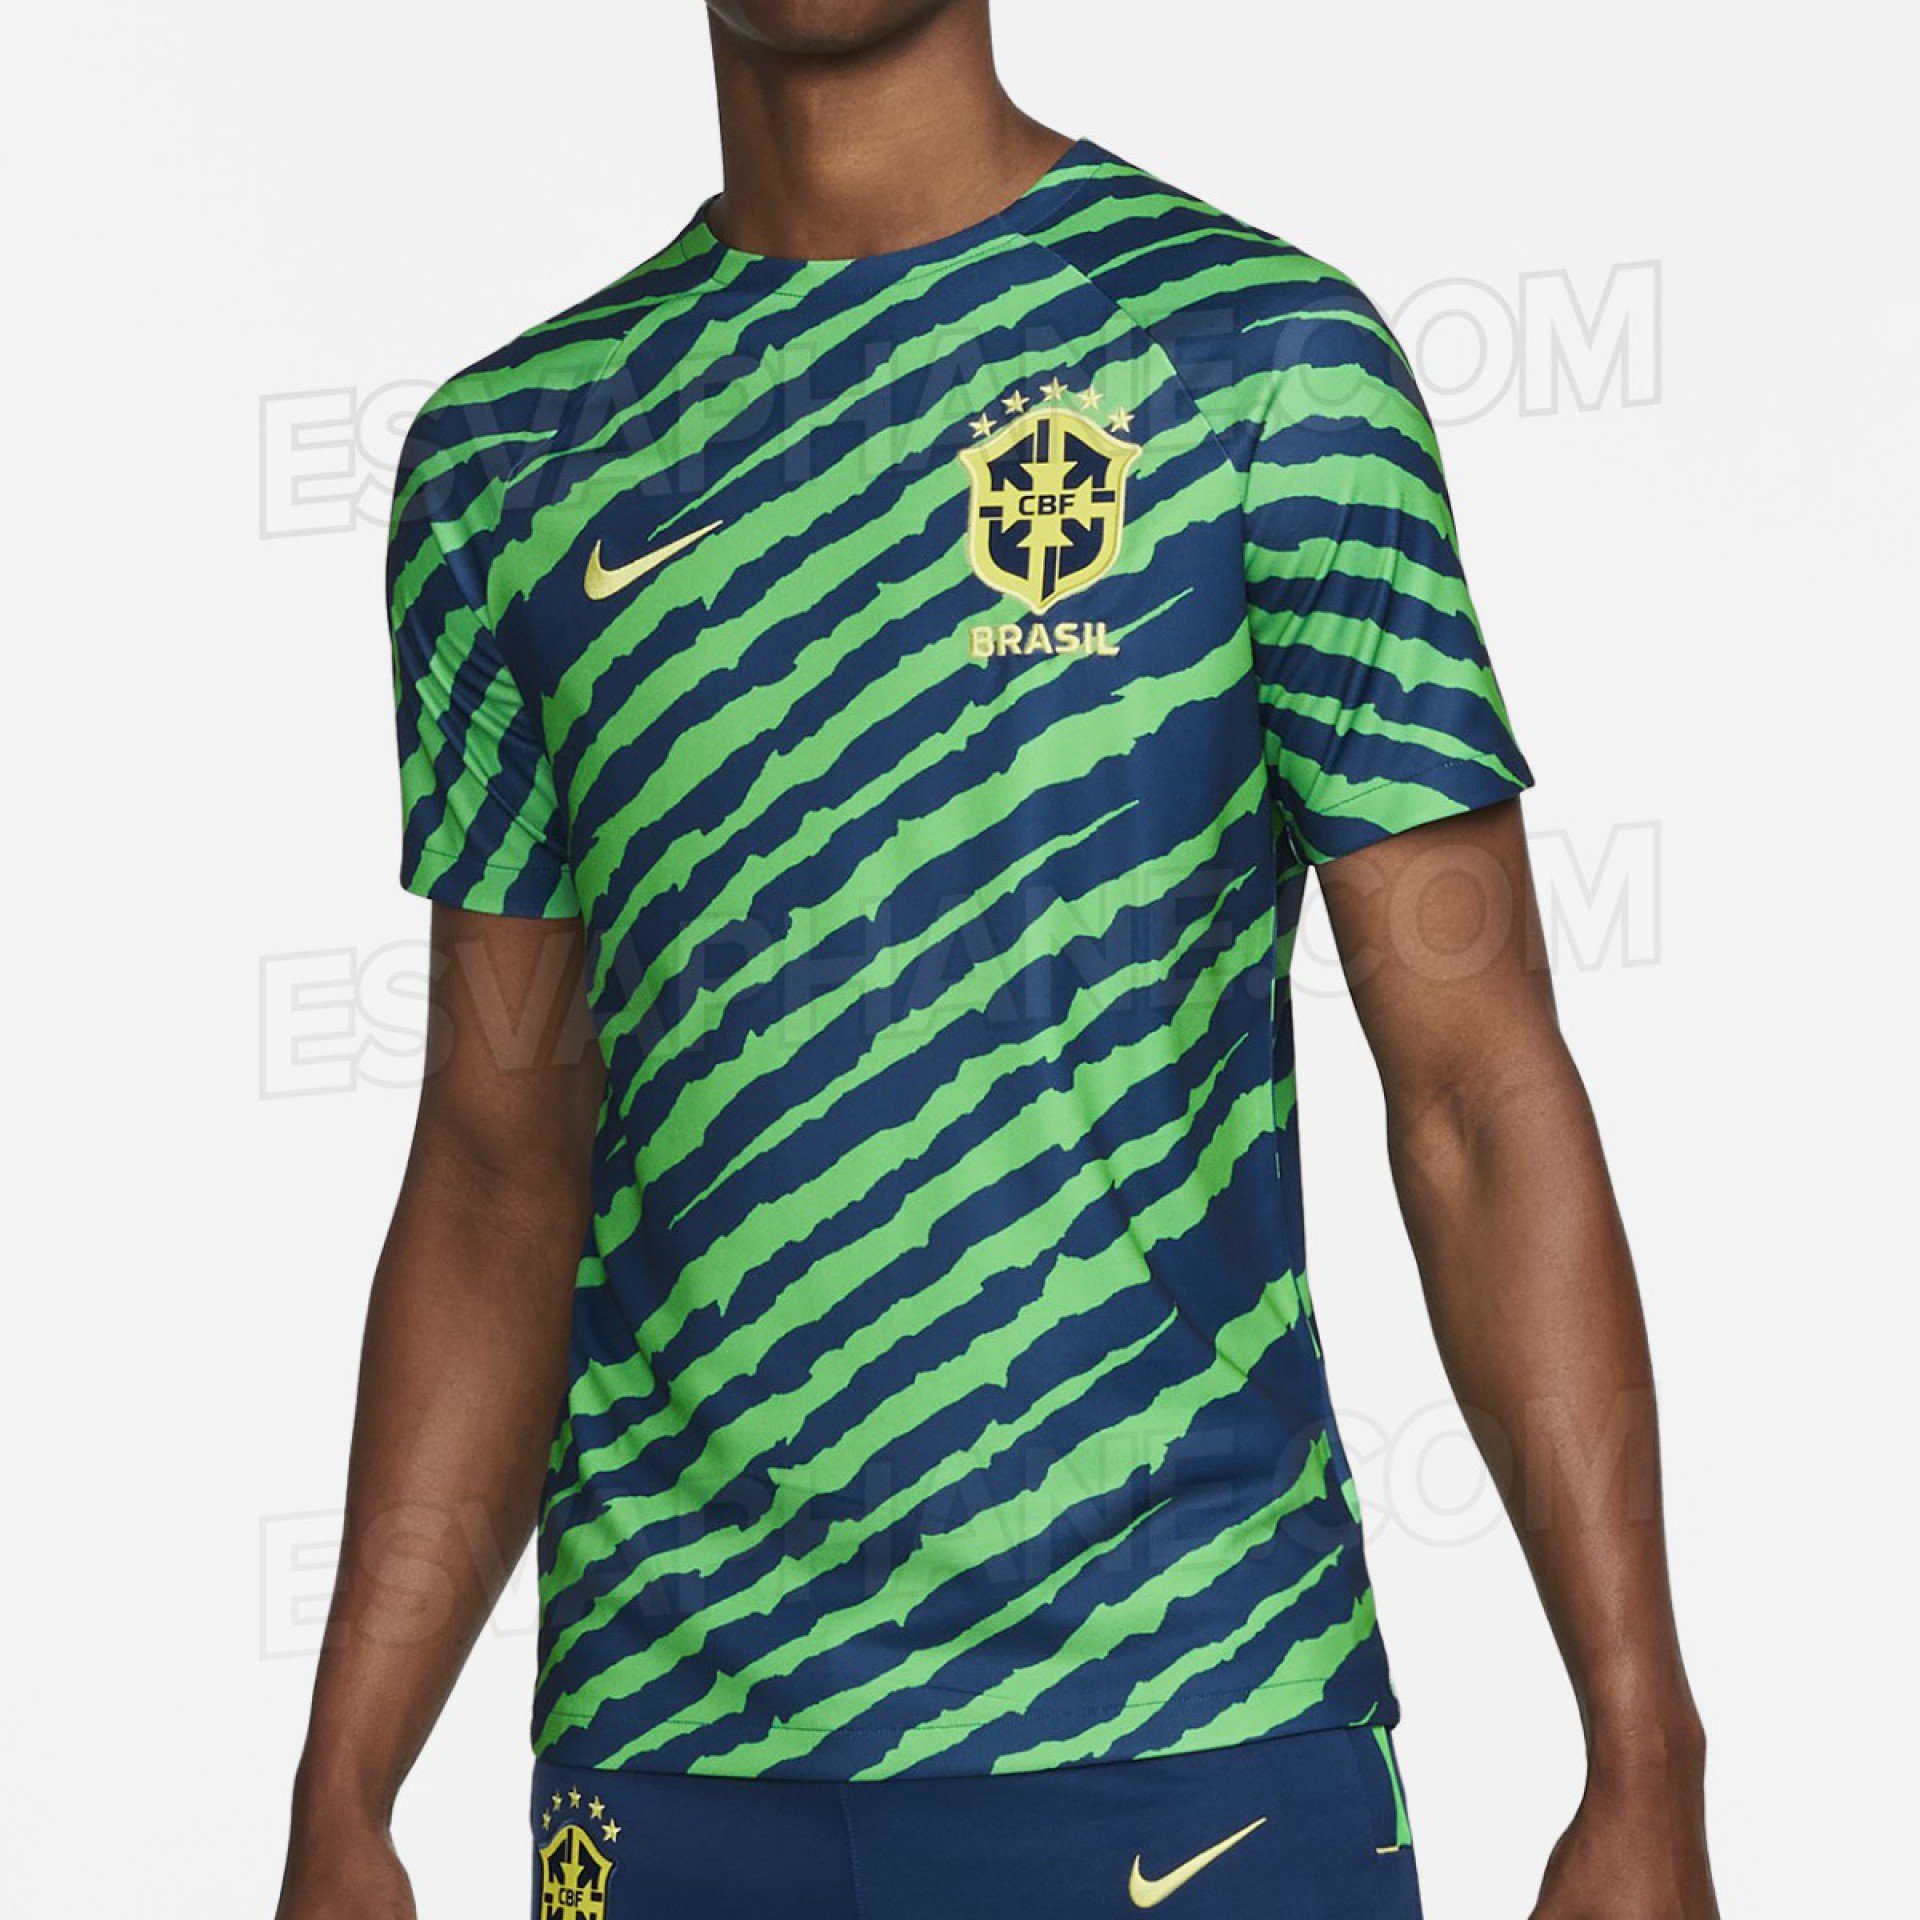 Nova camisa pré-jogo da Seleção Brasileira, segundo portal turco - Reprodução/Esvaphane